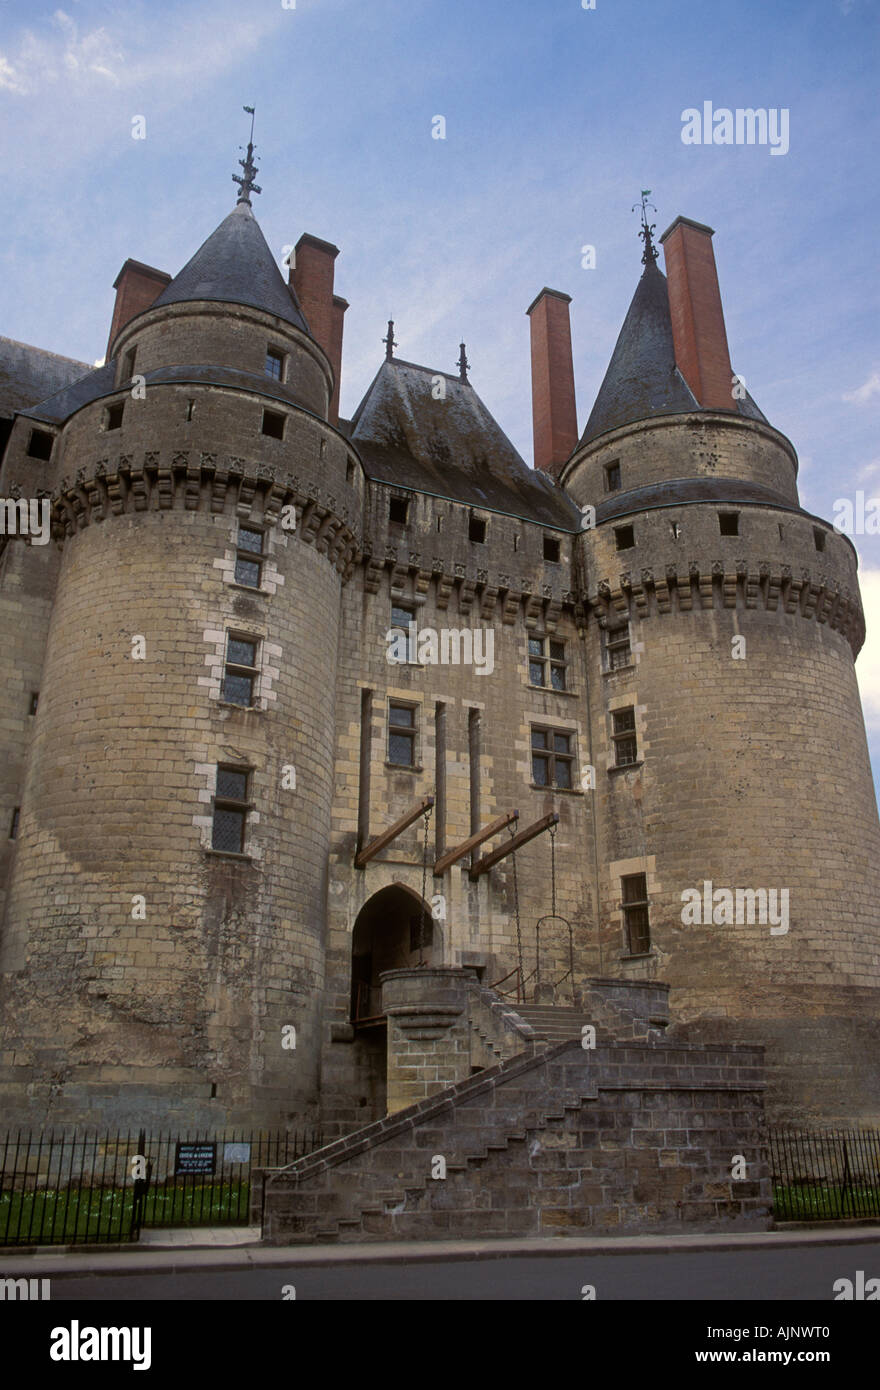 Chateau de Langeais, langeais castillo chateau francés, su castillo  medieval, el museo, la ciudad de Langeais, langeais, Valle del Loira,  Indre-et-Loire, Francia Fotografía de stock - Alamy